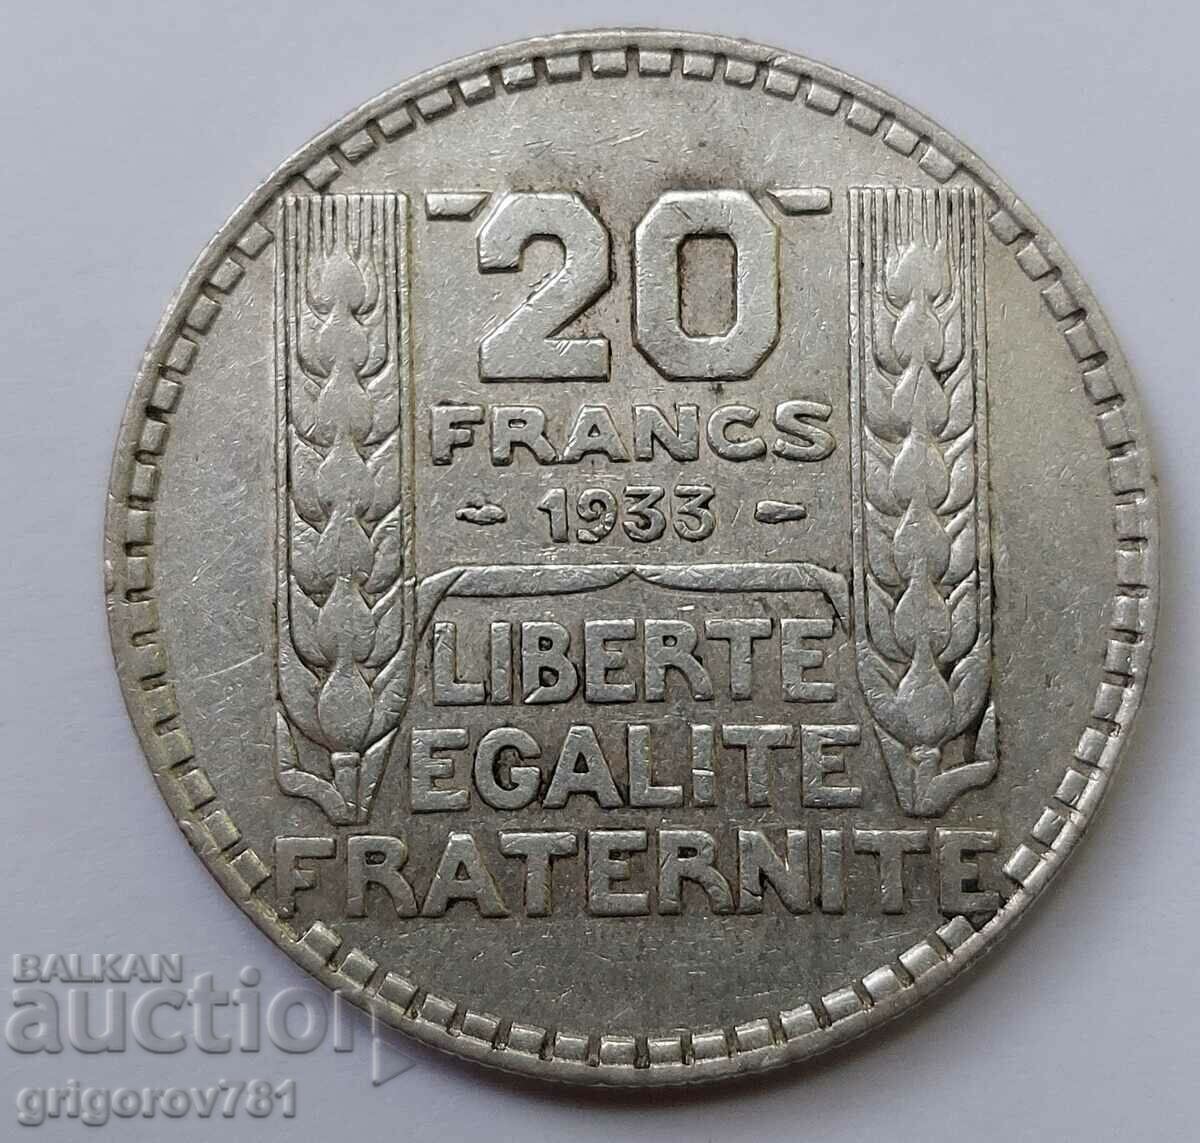 20 Φράγκα Ασήμι Γαλλία 1933 - Ασημένιο νόμισμα #7